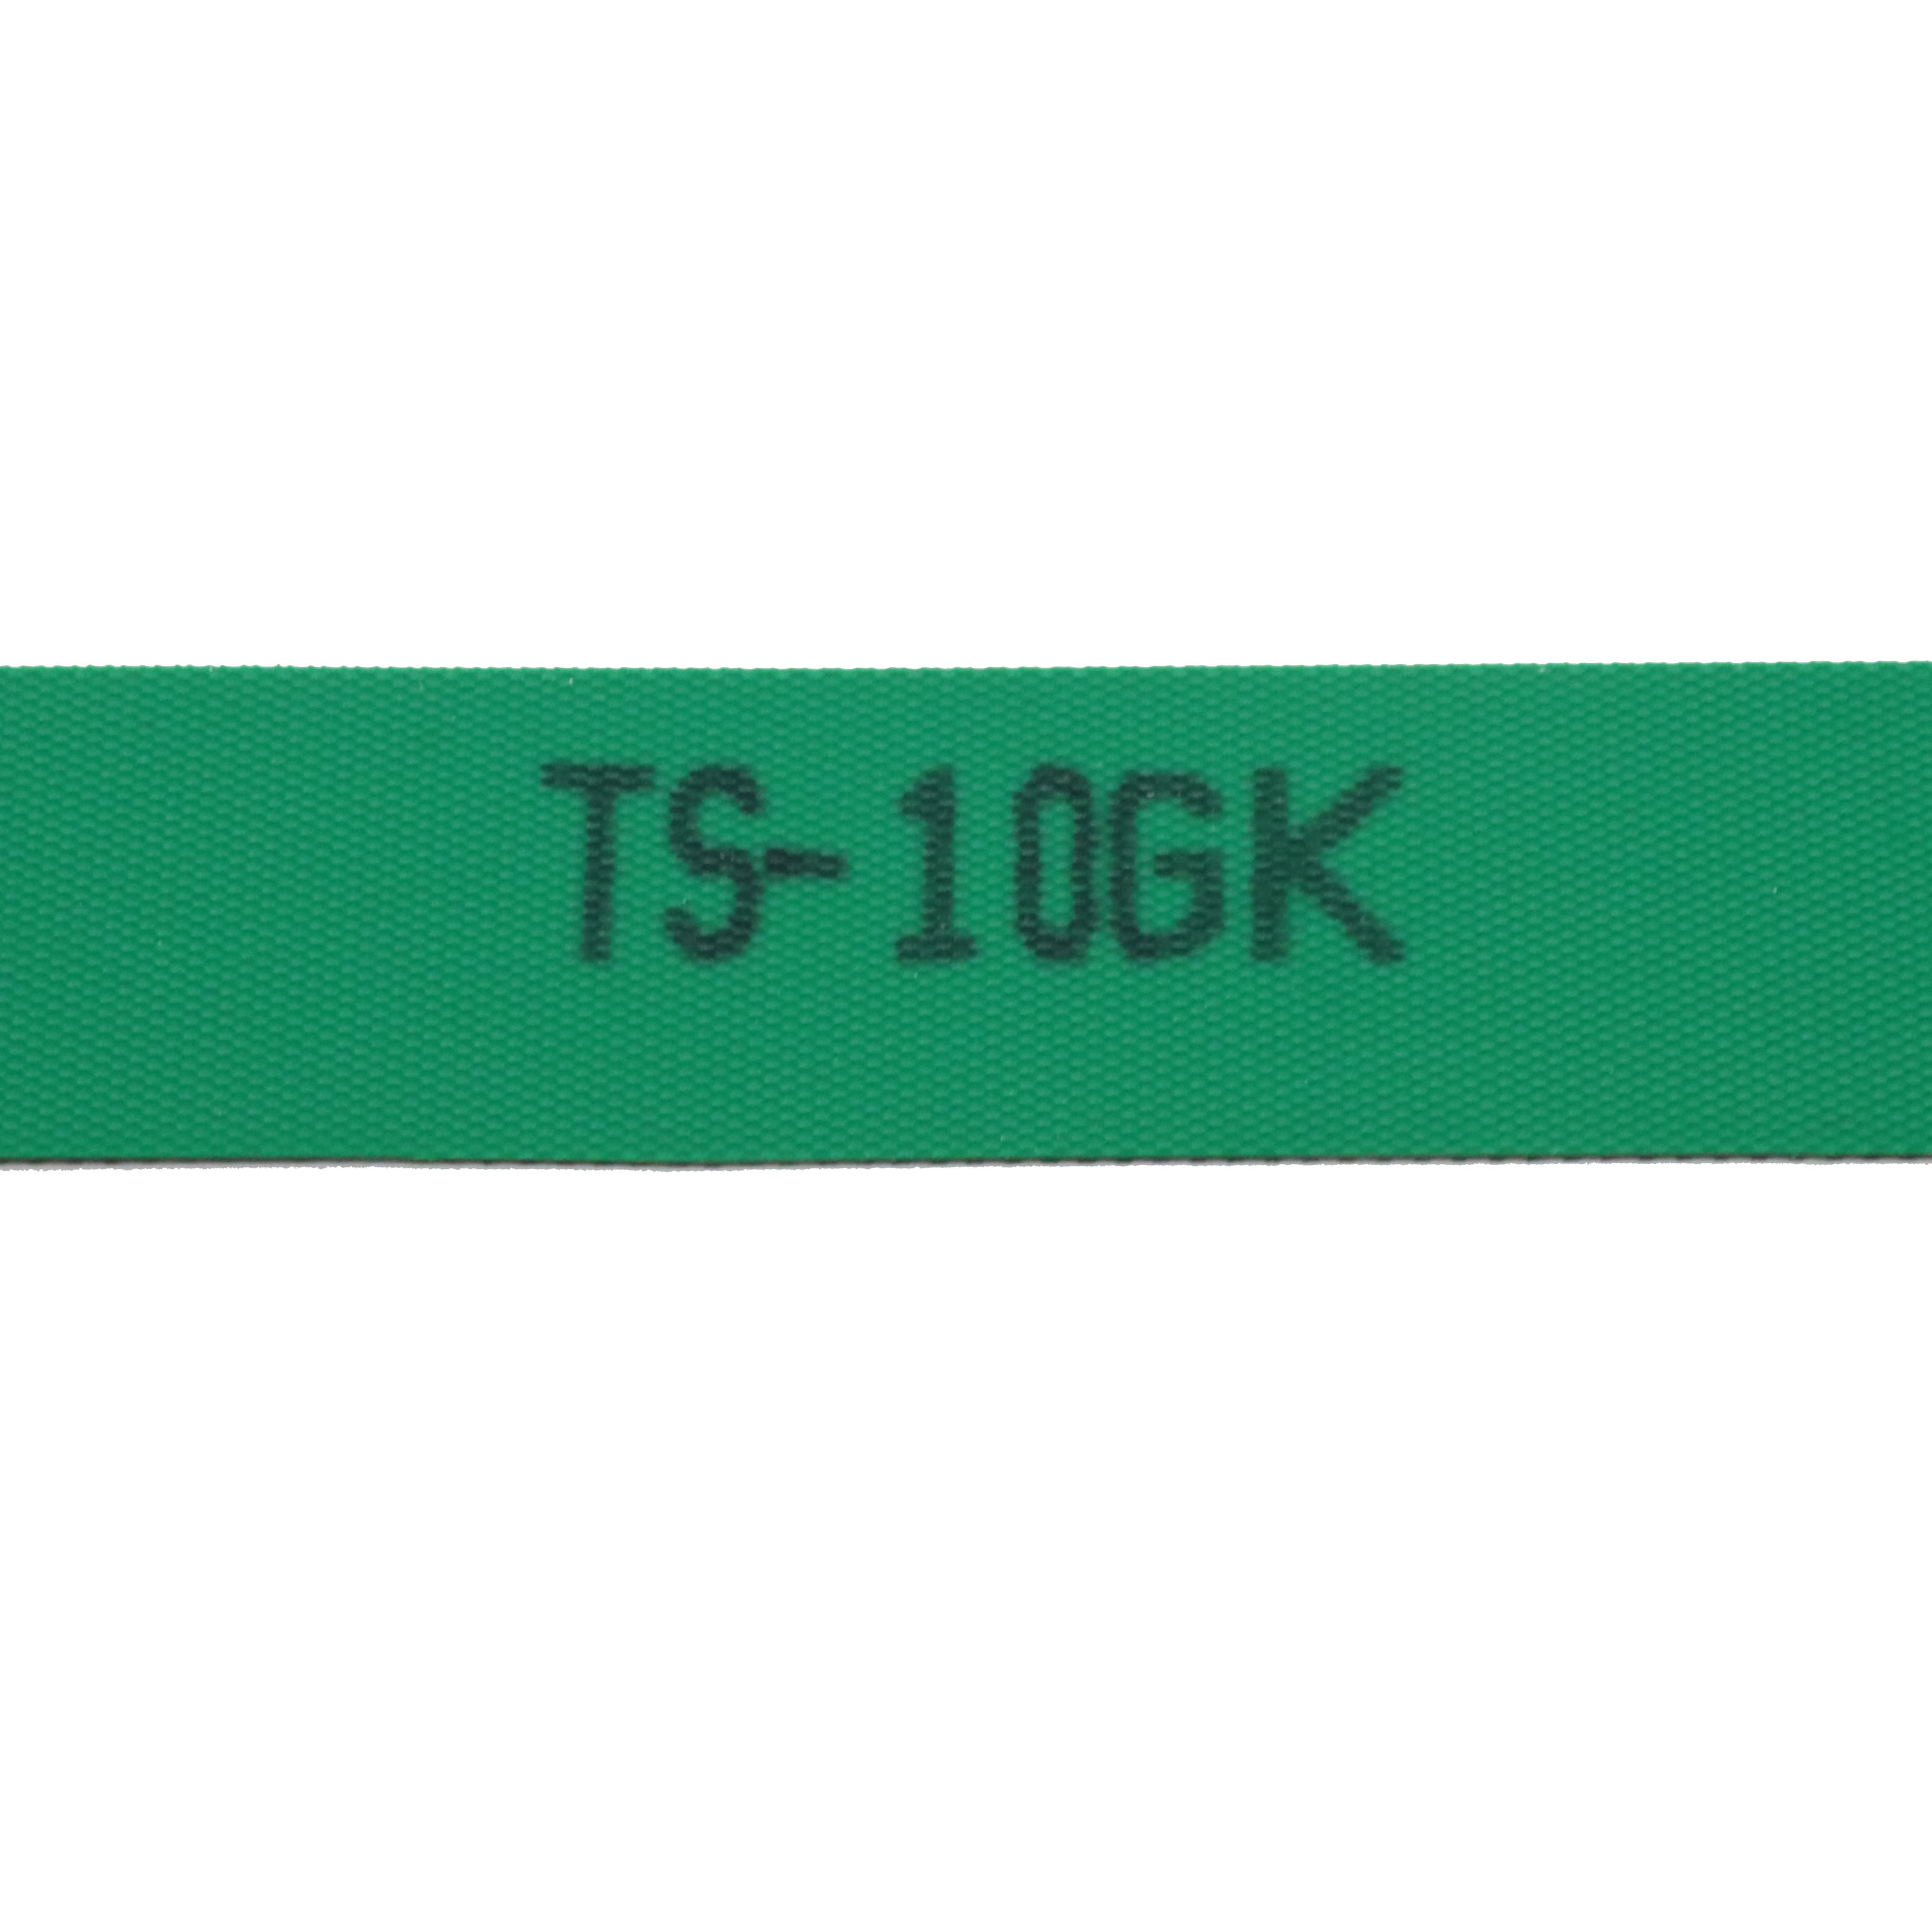 TS-10GK